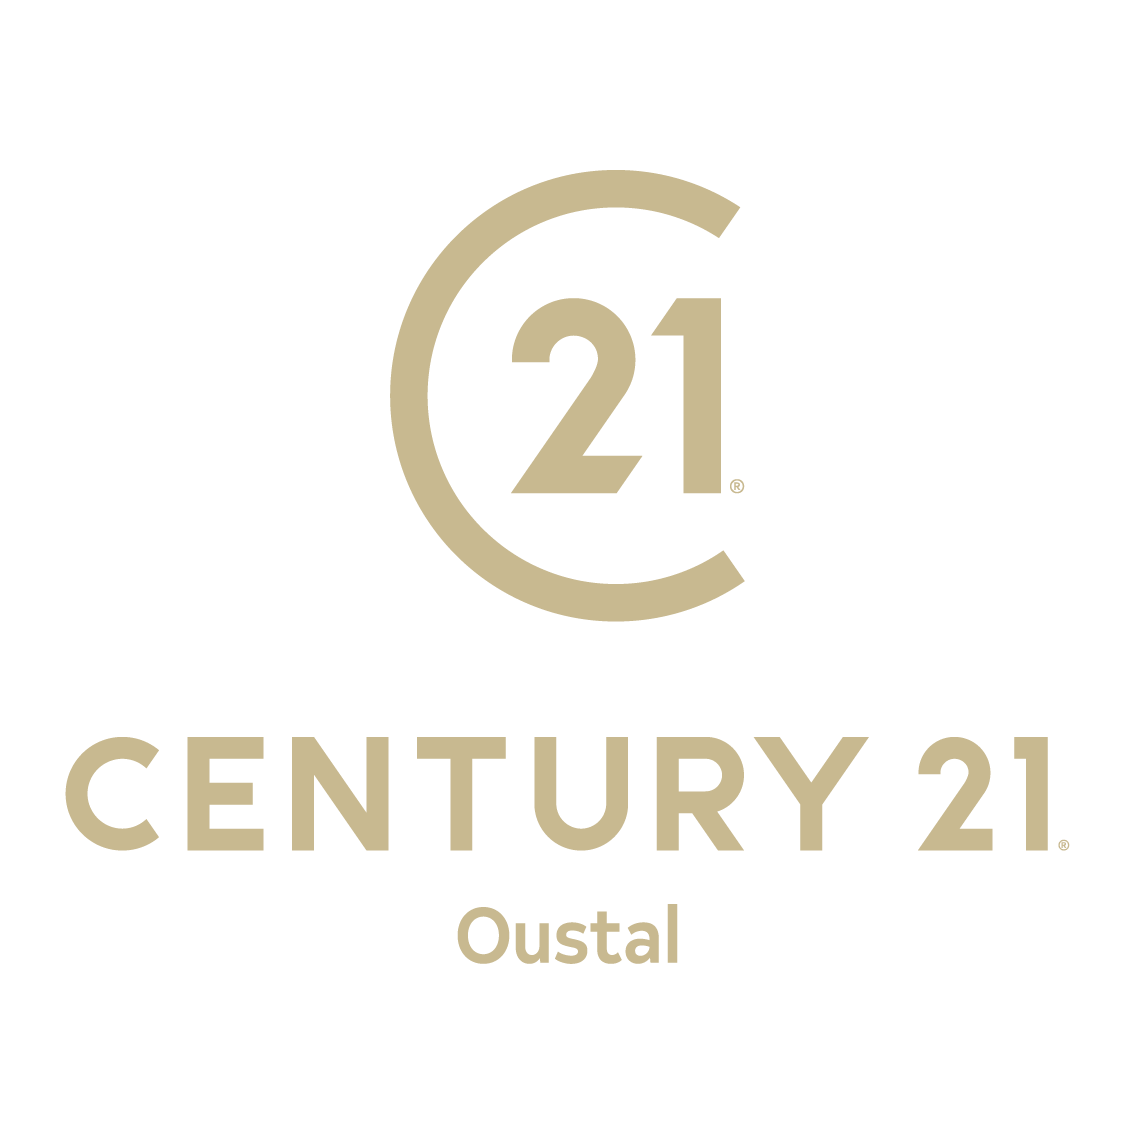 Century 21 Oustal